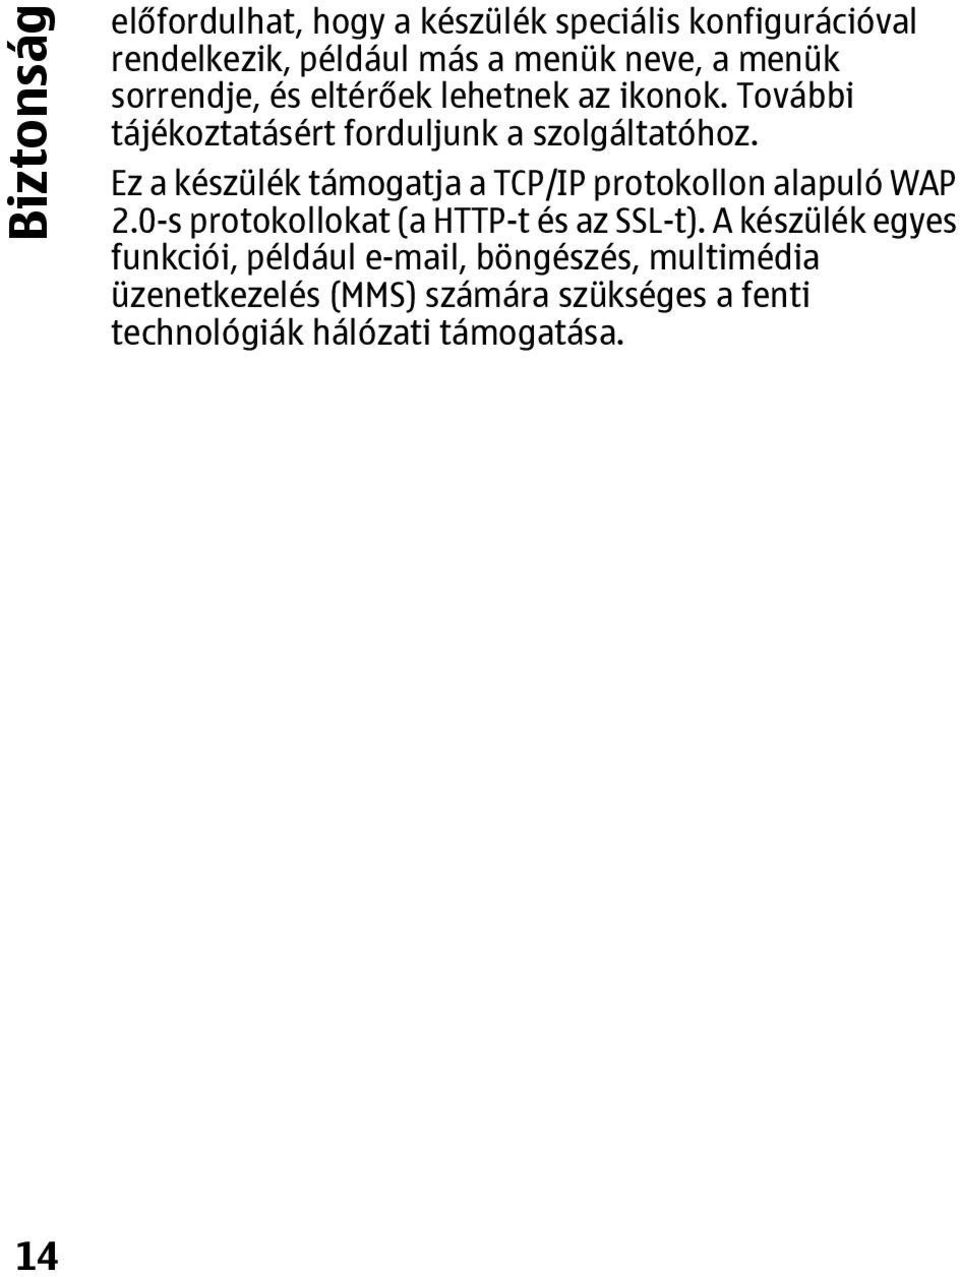 Ez a készülék támogatja a TCP/IP protokollon alapuló WAP 2.0-s protokollokat (a HTTP-t és az SSL-t).